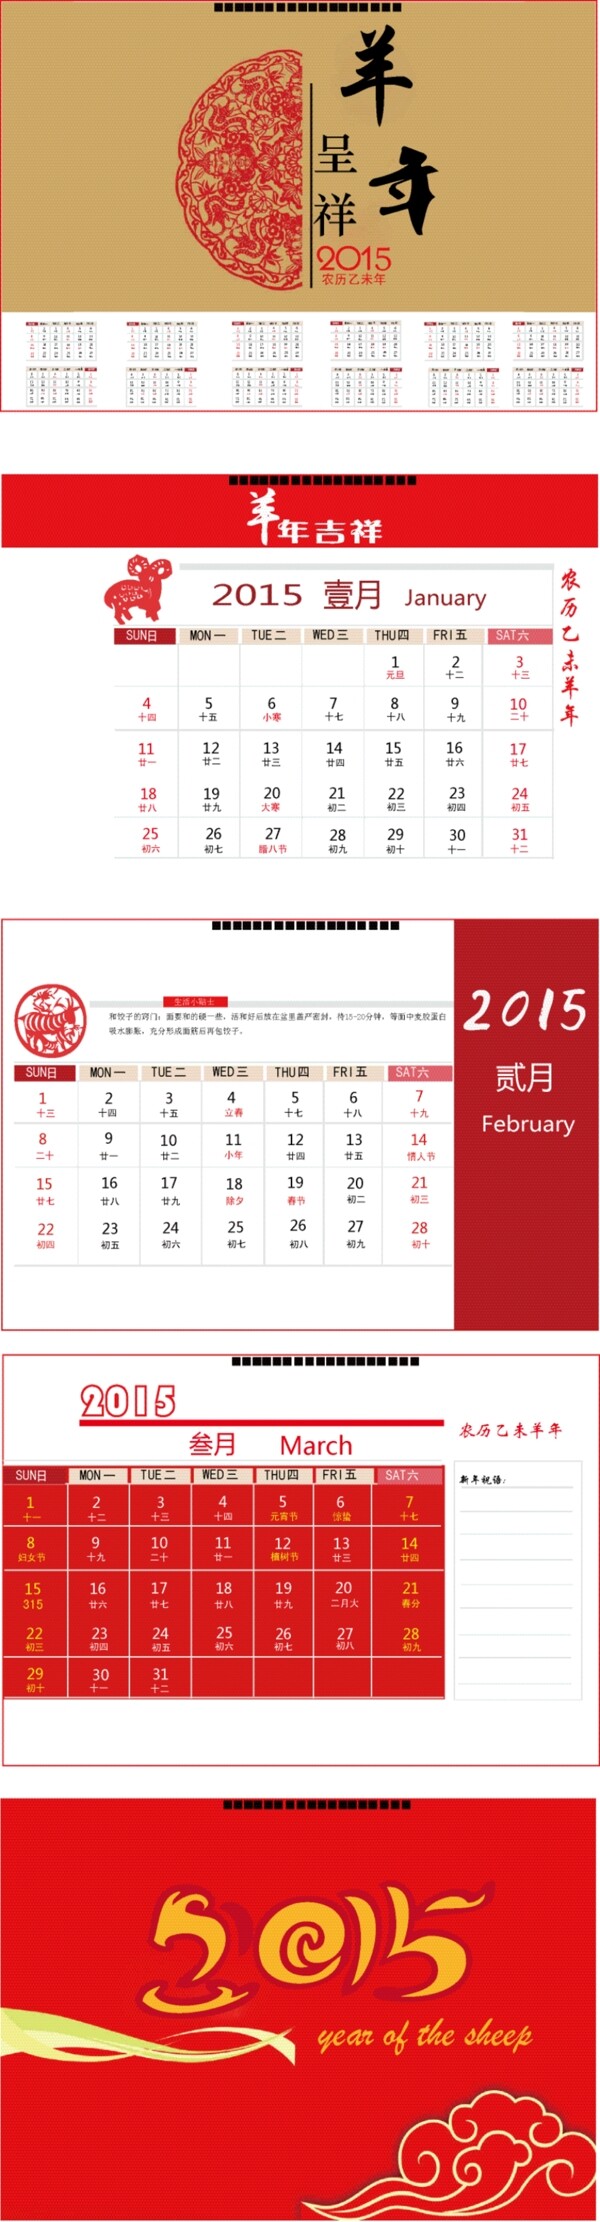 2015羊年春节日历设计